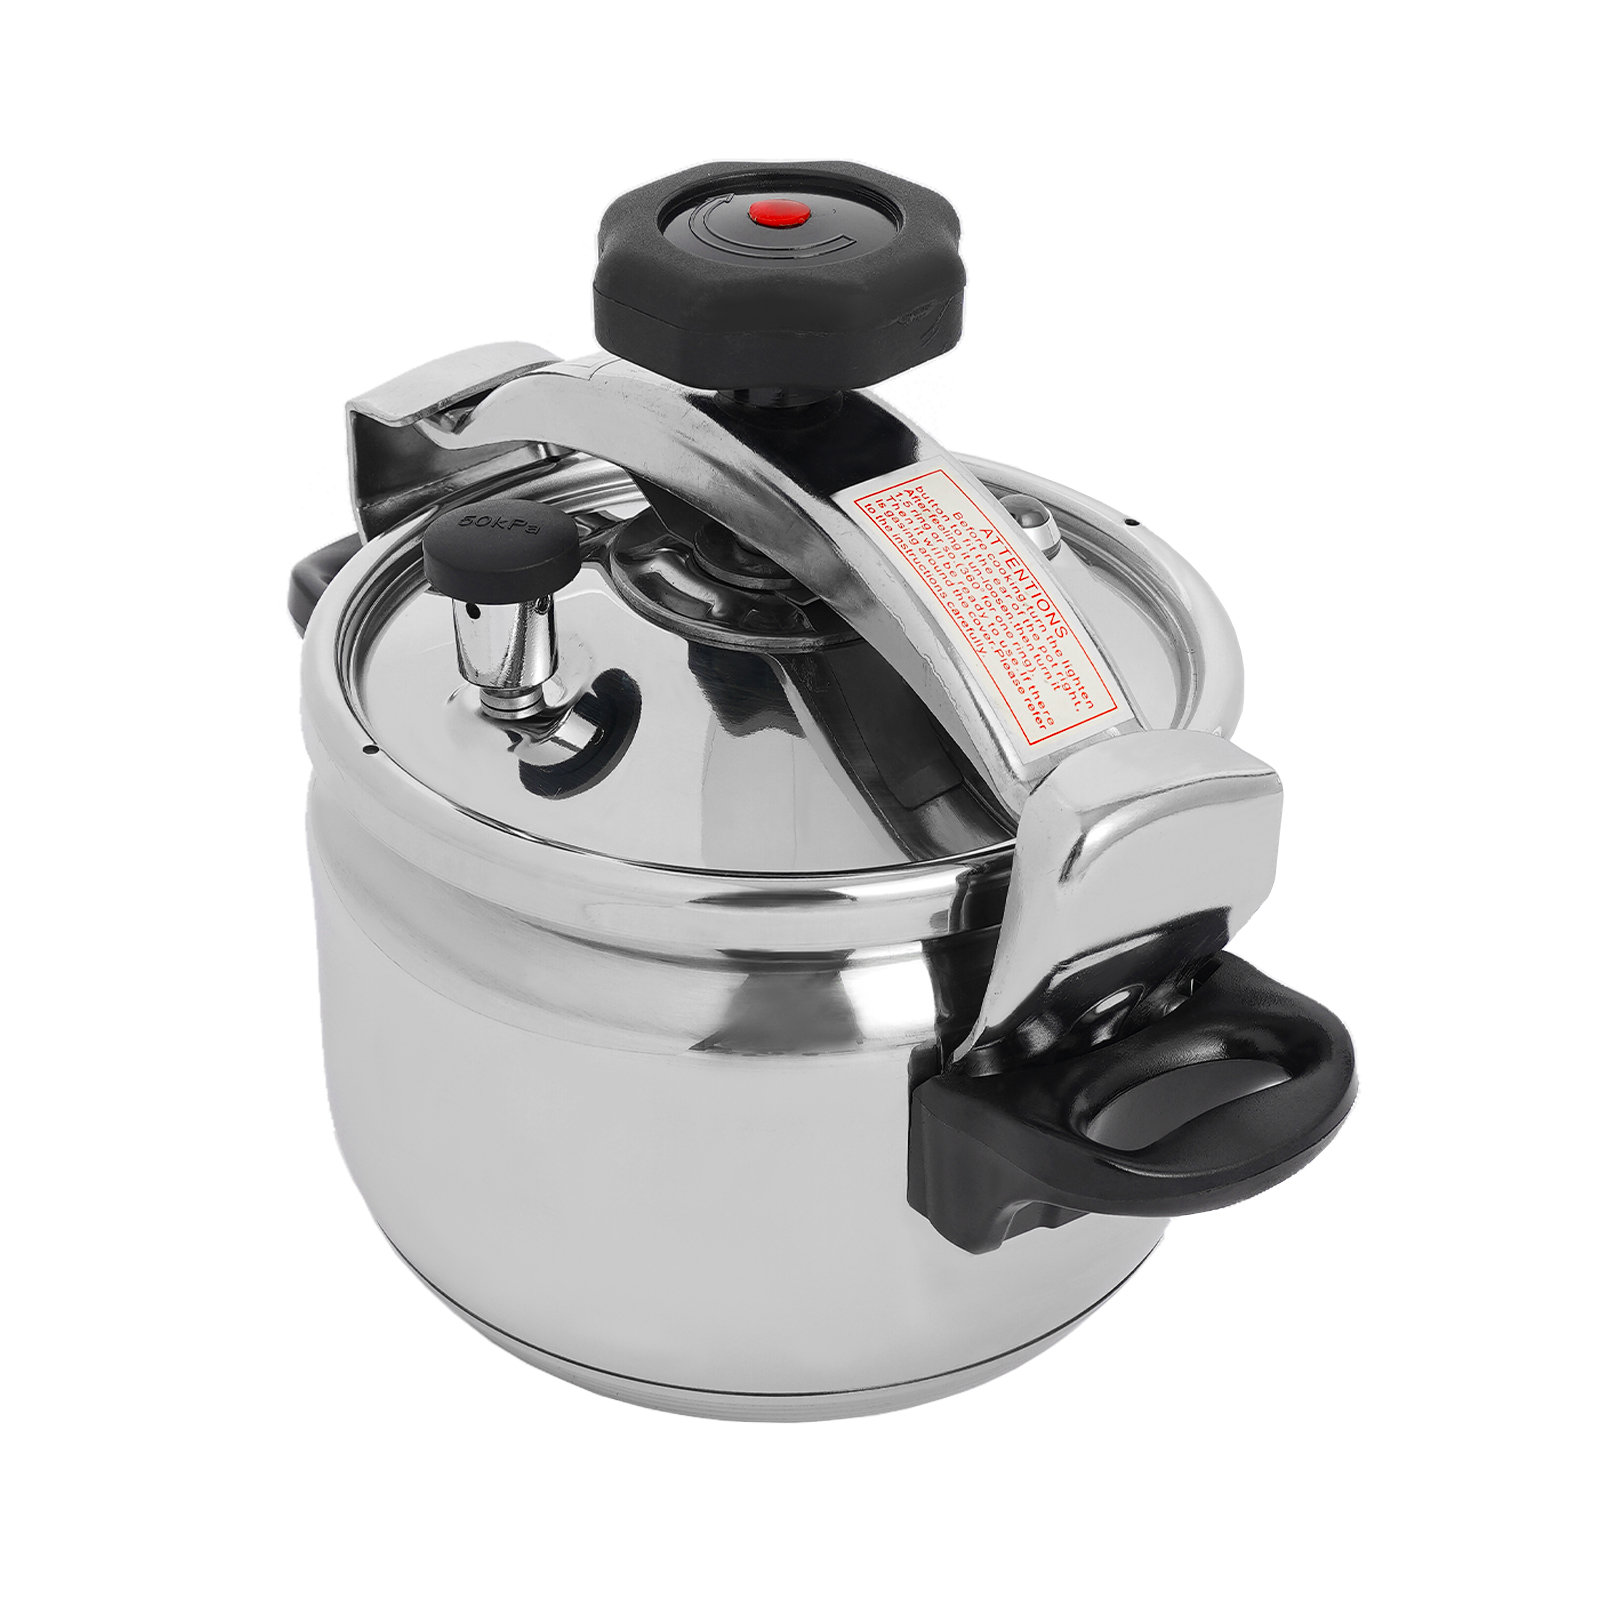 Instant Pot Insert Pans, 3 Tier for 6 Qt / 8 Qt Pressure Cookers 